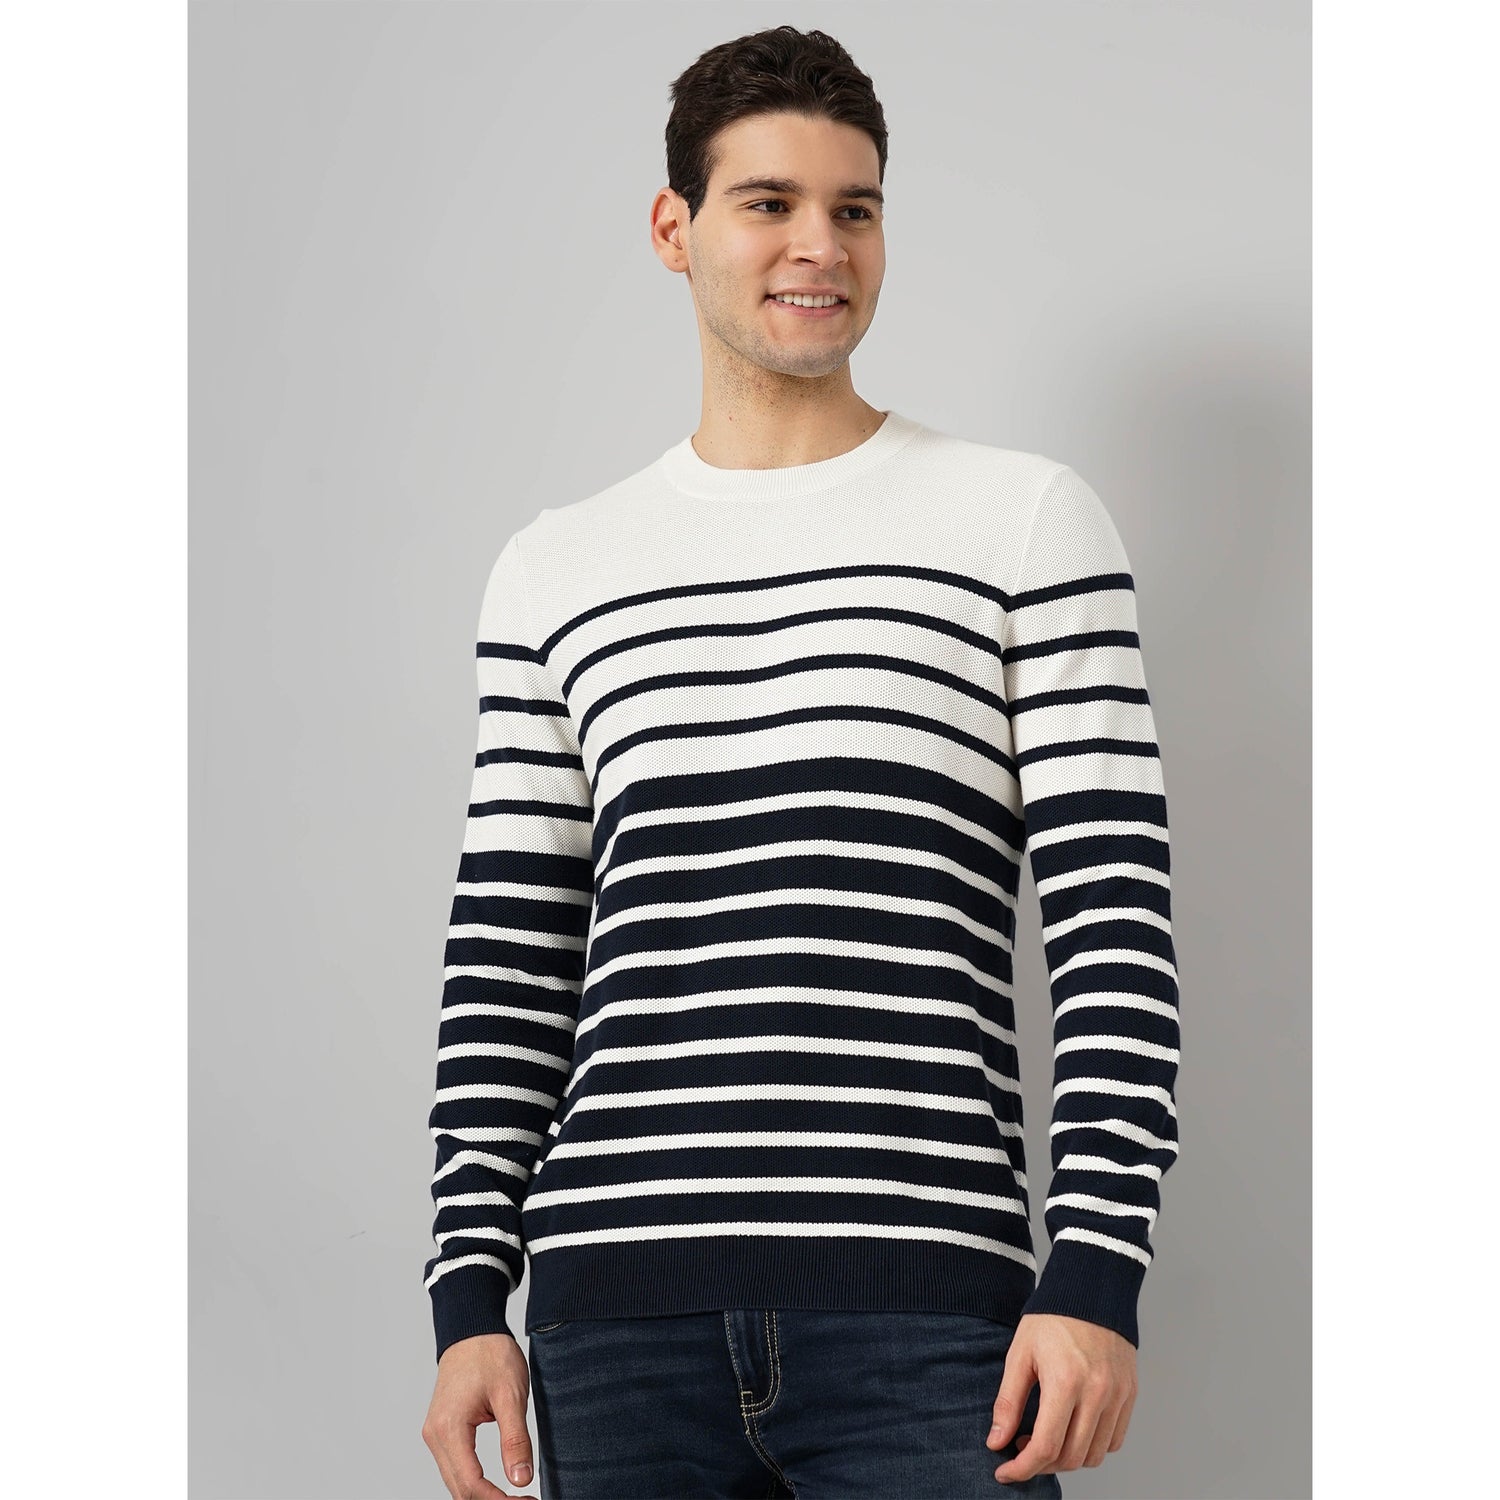 Cotton White Horizontal Stripes Sweater